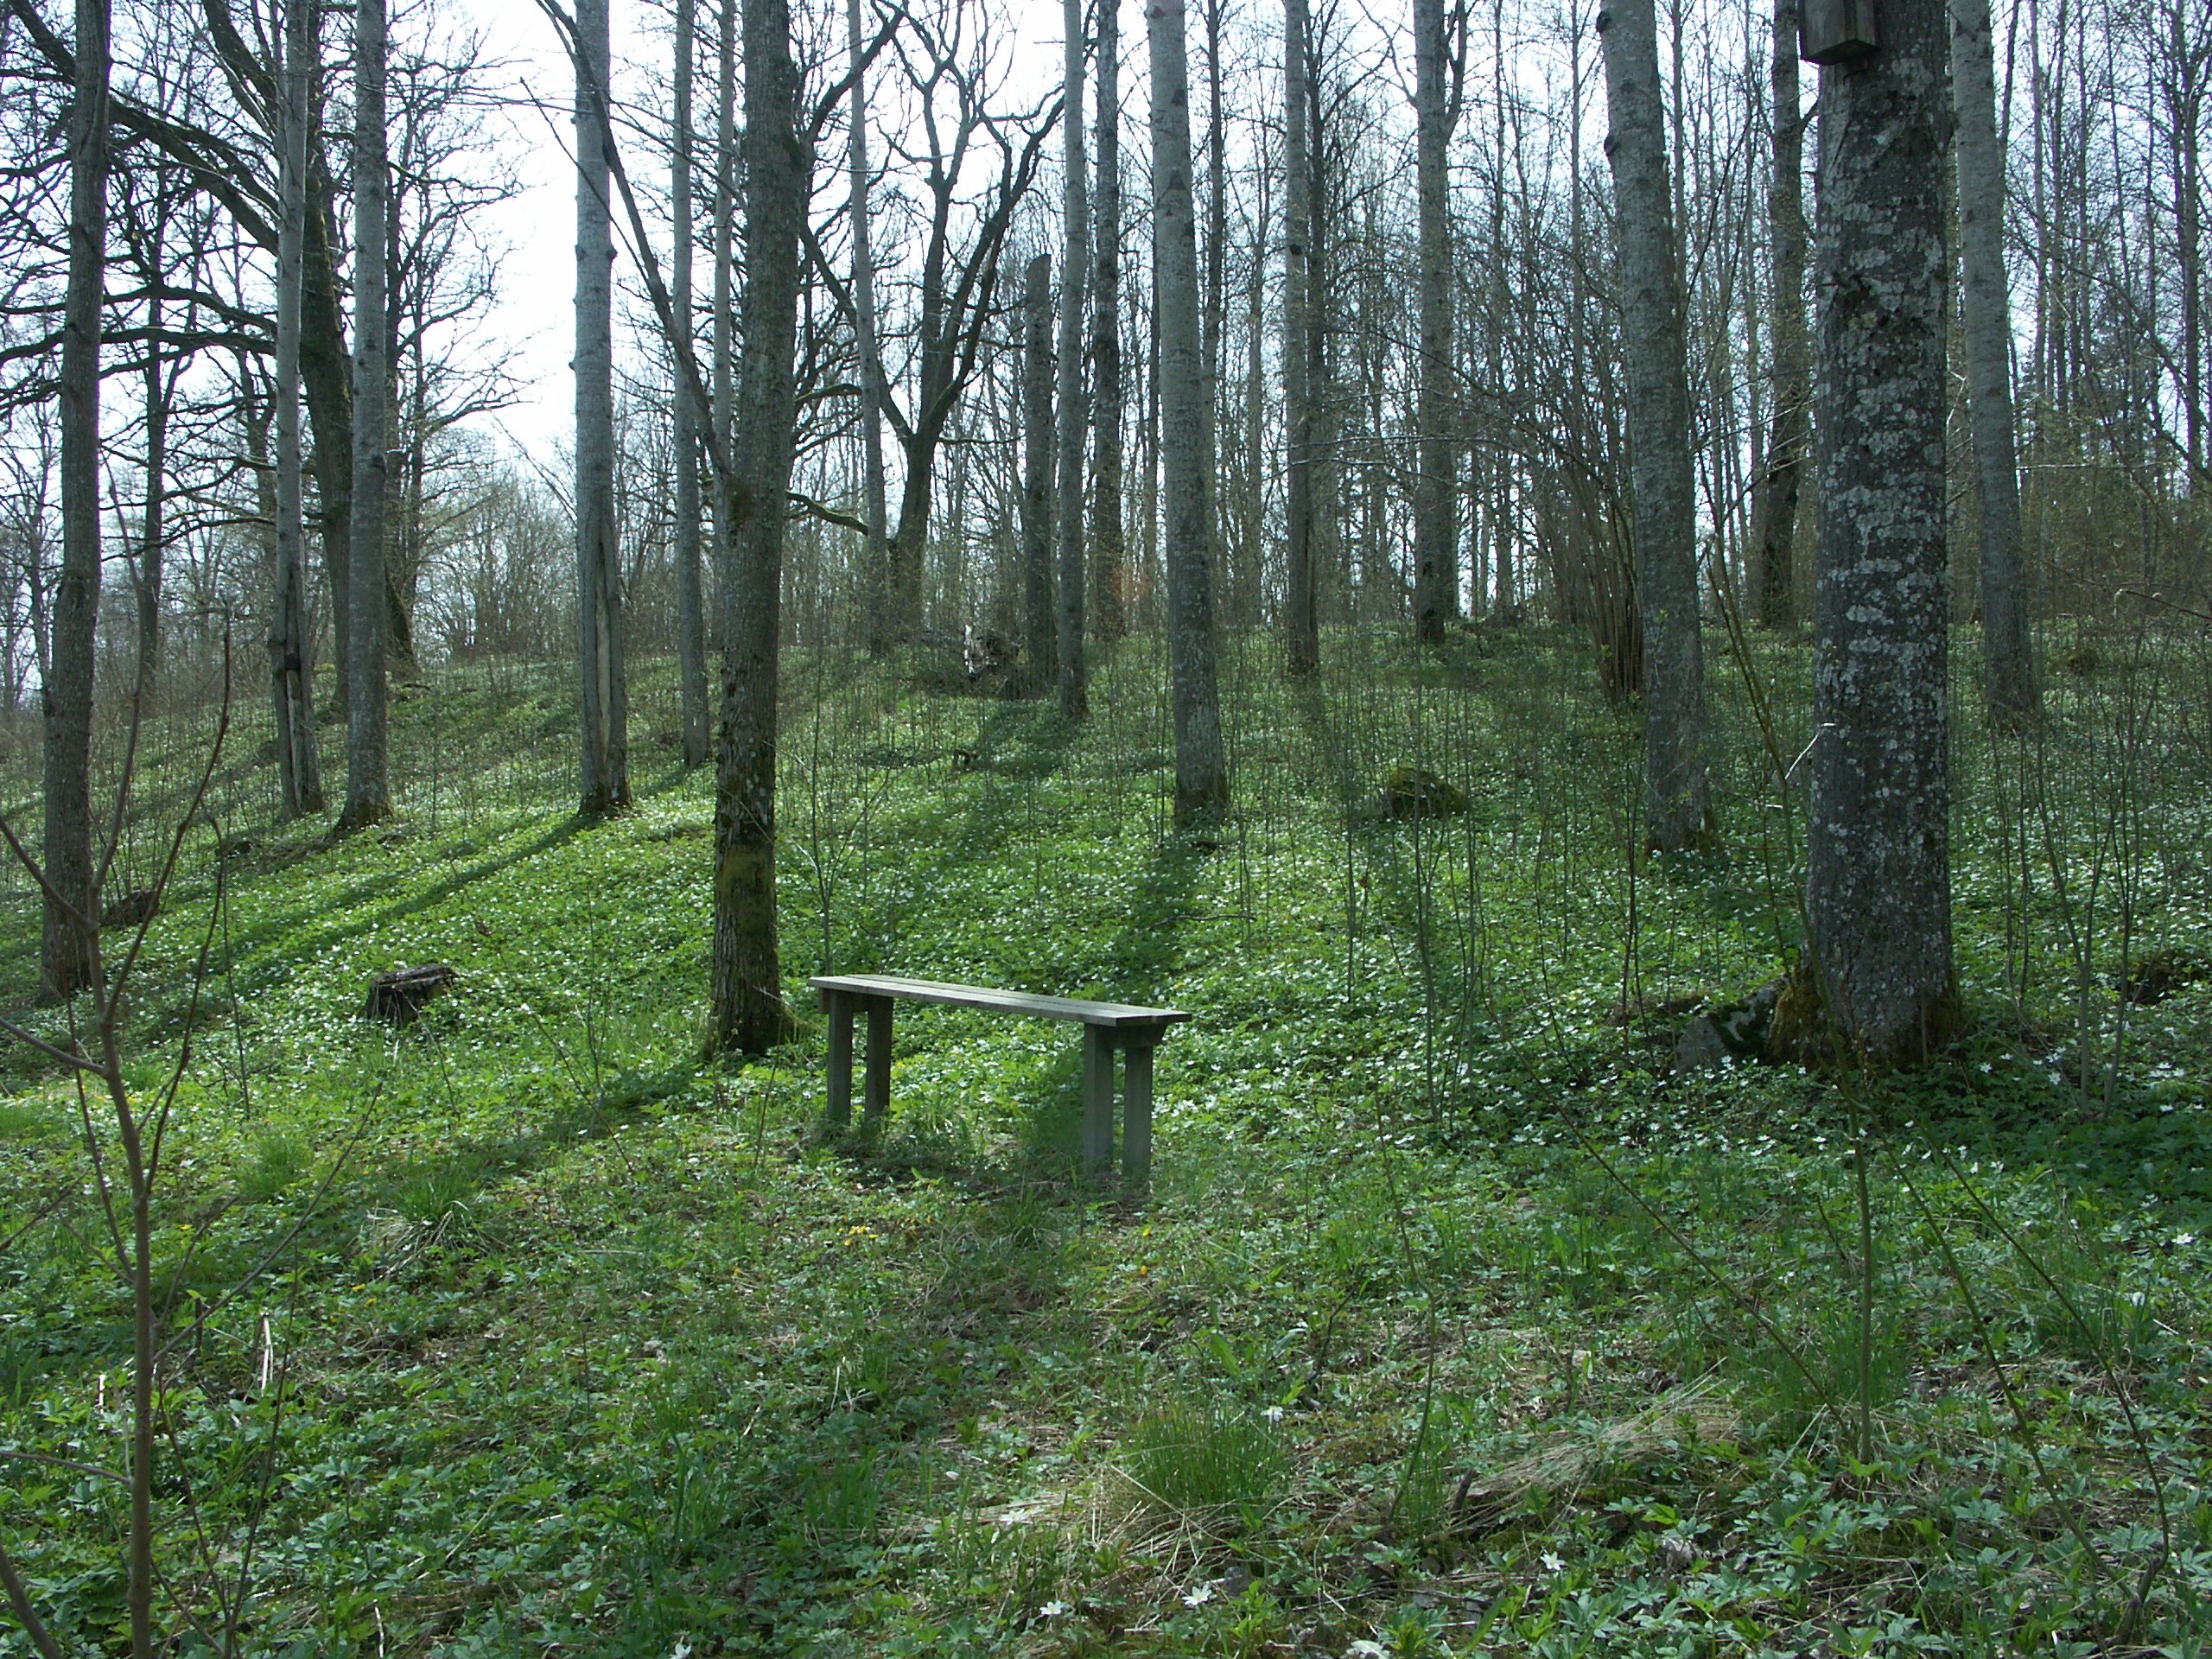 Gles solbelyst skogsbacke med aspar. Vitsippor växer på marken. En bänk finns att sitta på.